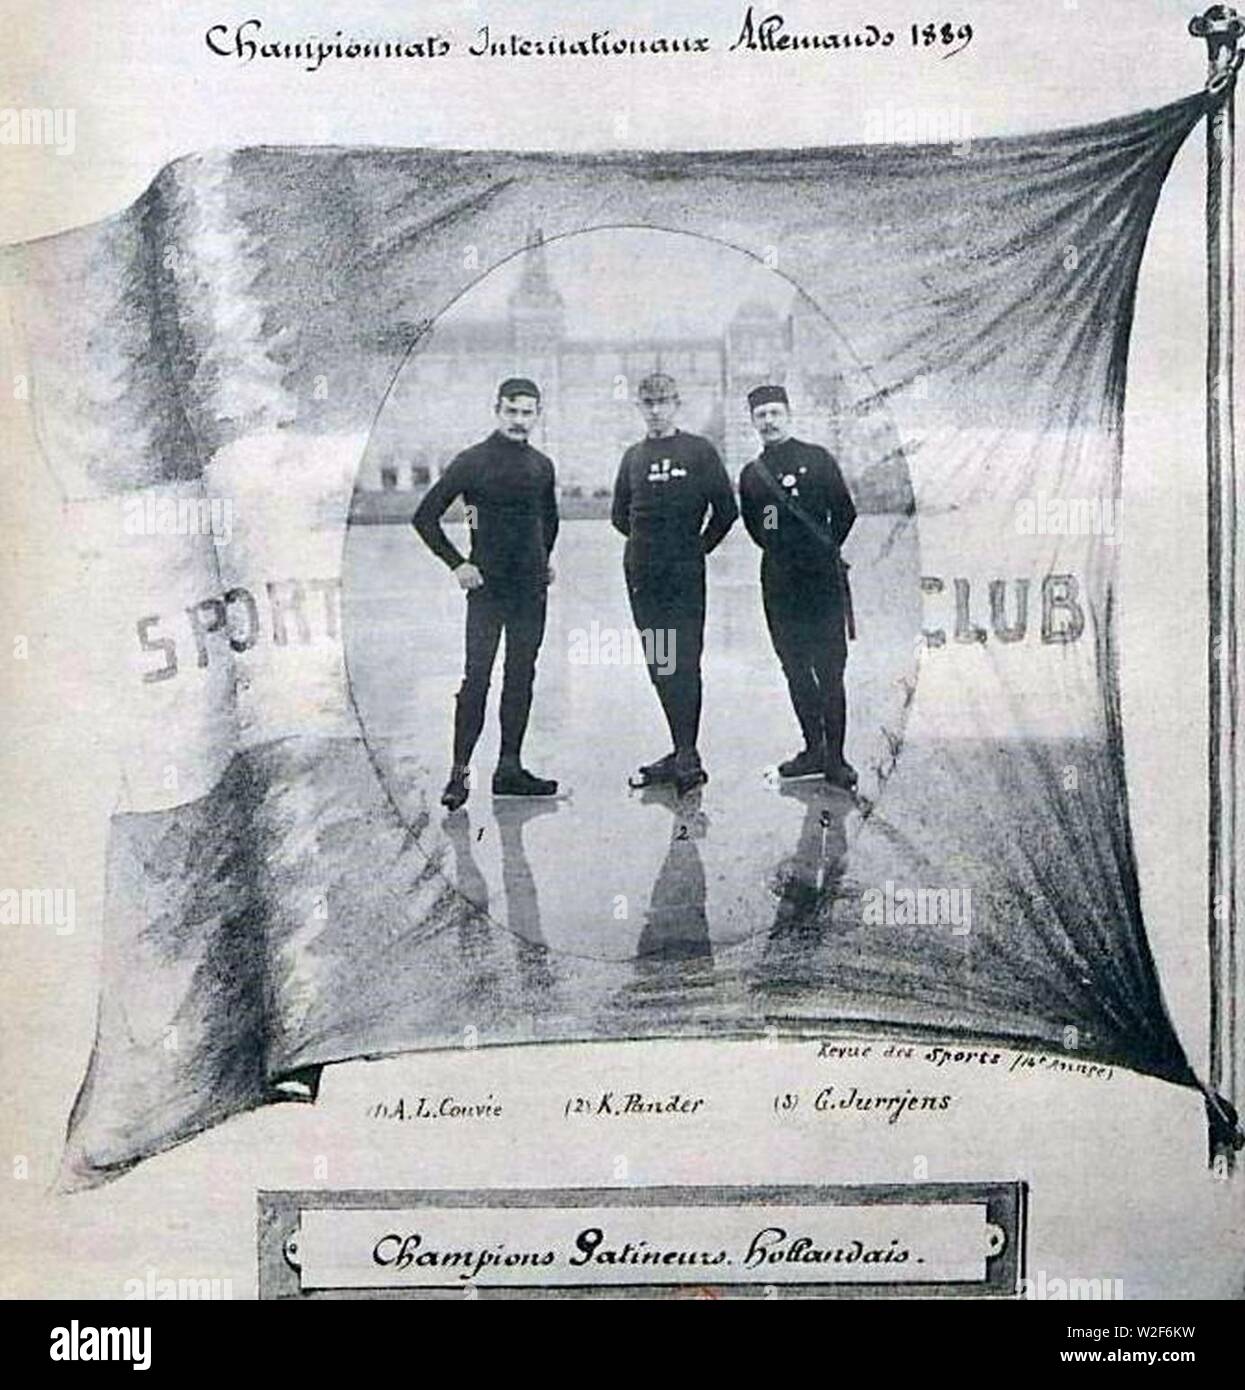 Championnats internationaux allemand de patinage sur glace en février 1889, vainqueurs les néerlandais. Foto Stock